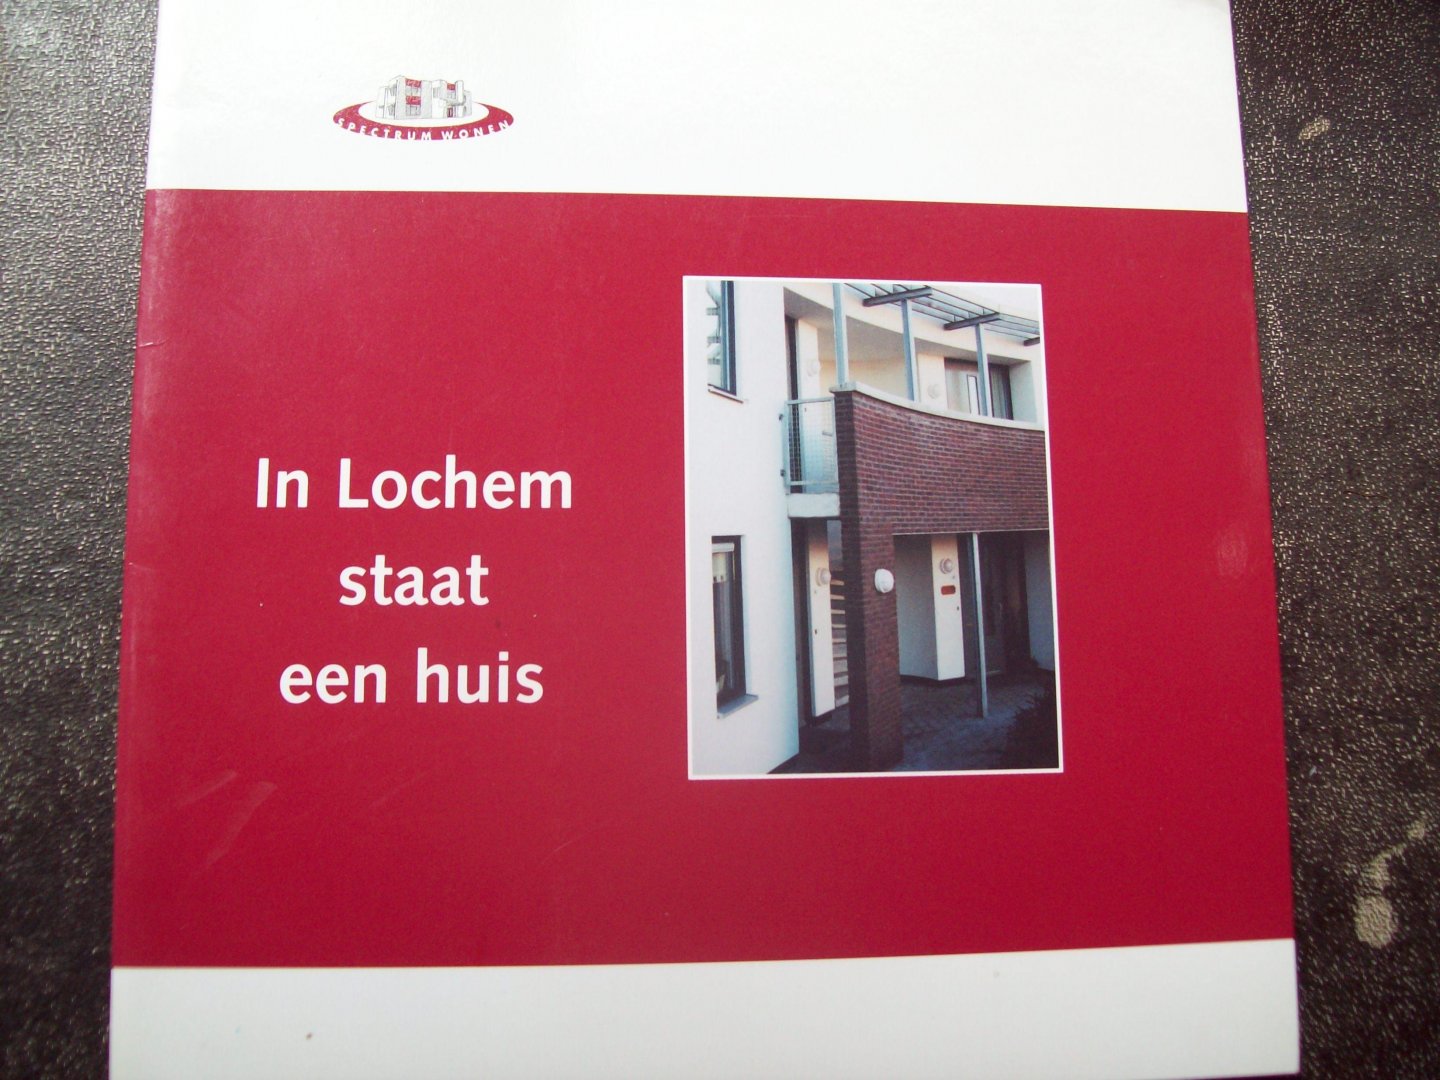 Fiona de Heus (tekst) - "In Lochem staat een huis"